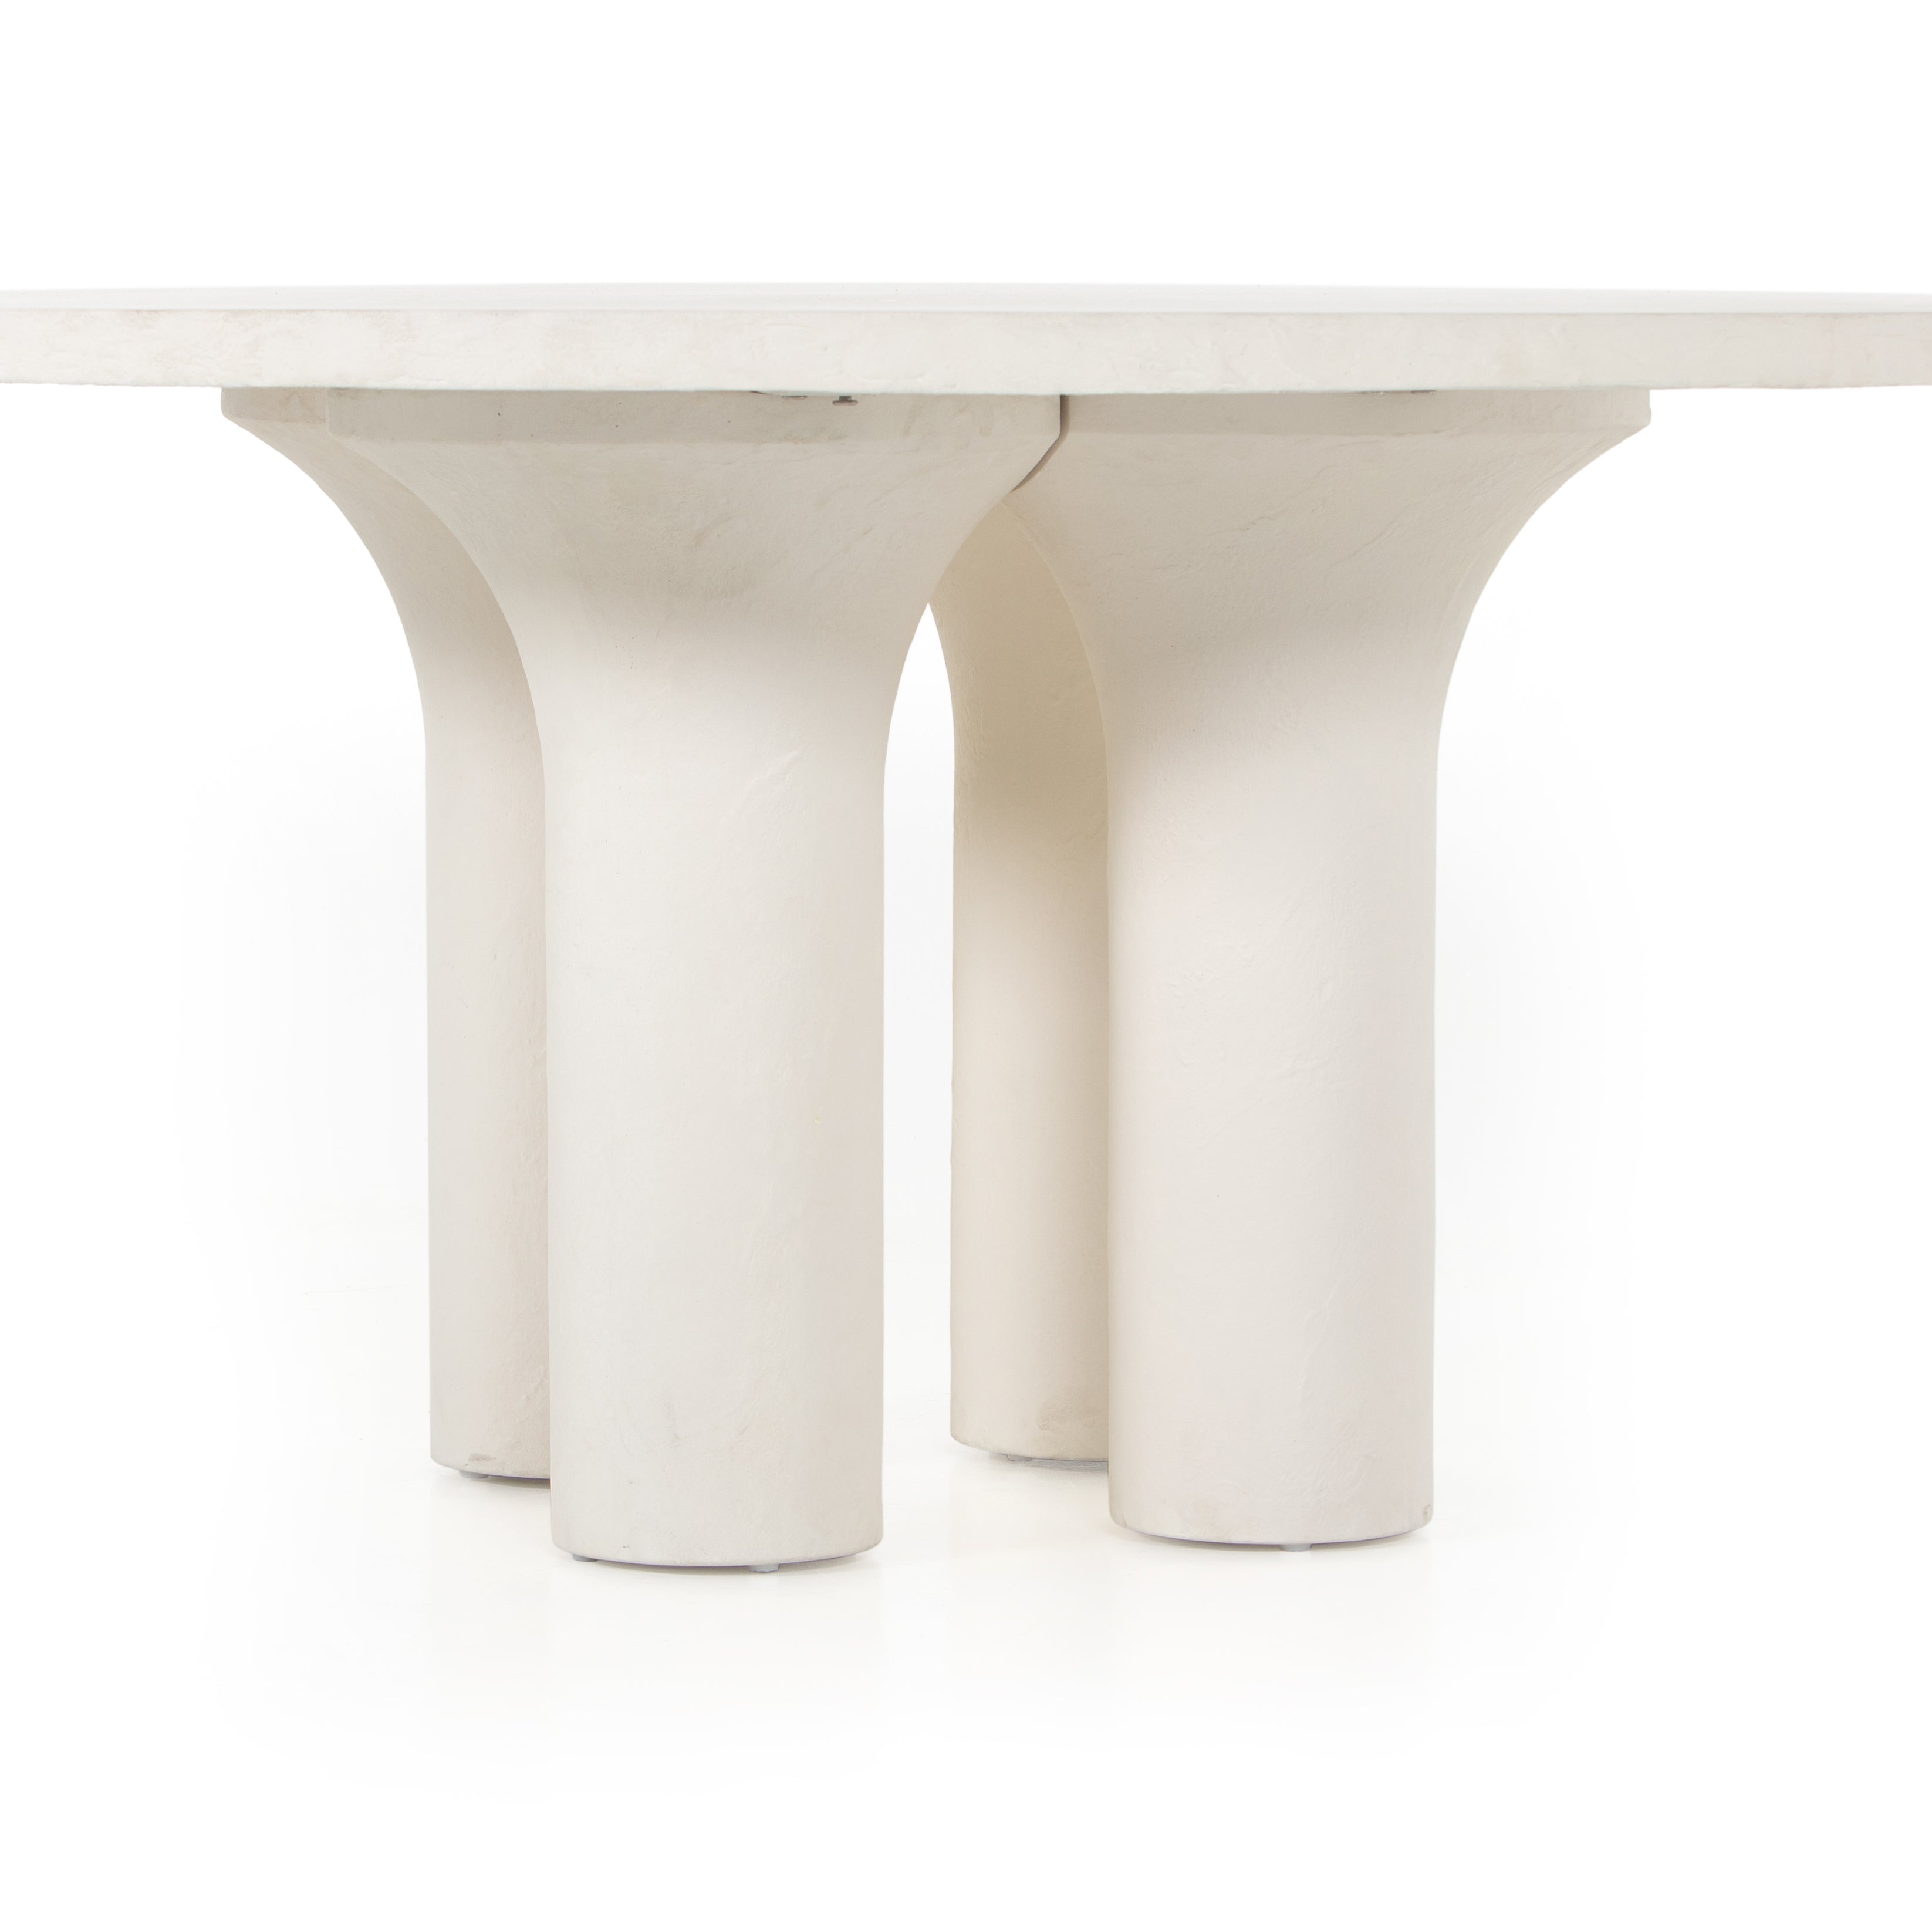 The Concrete Pillar Table